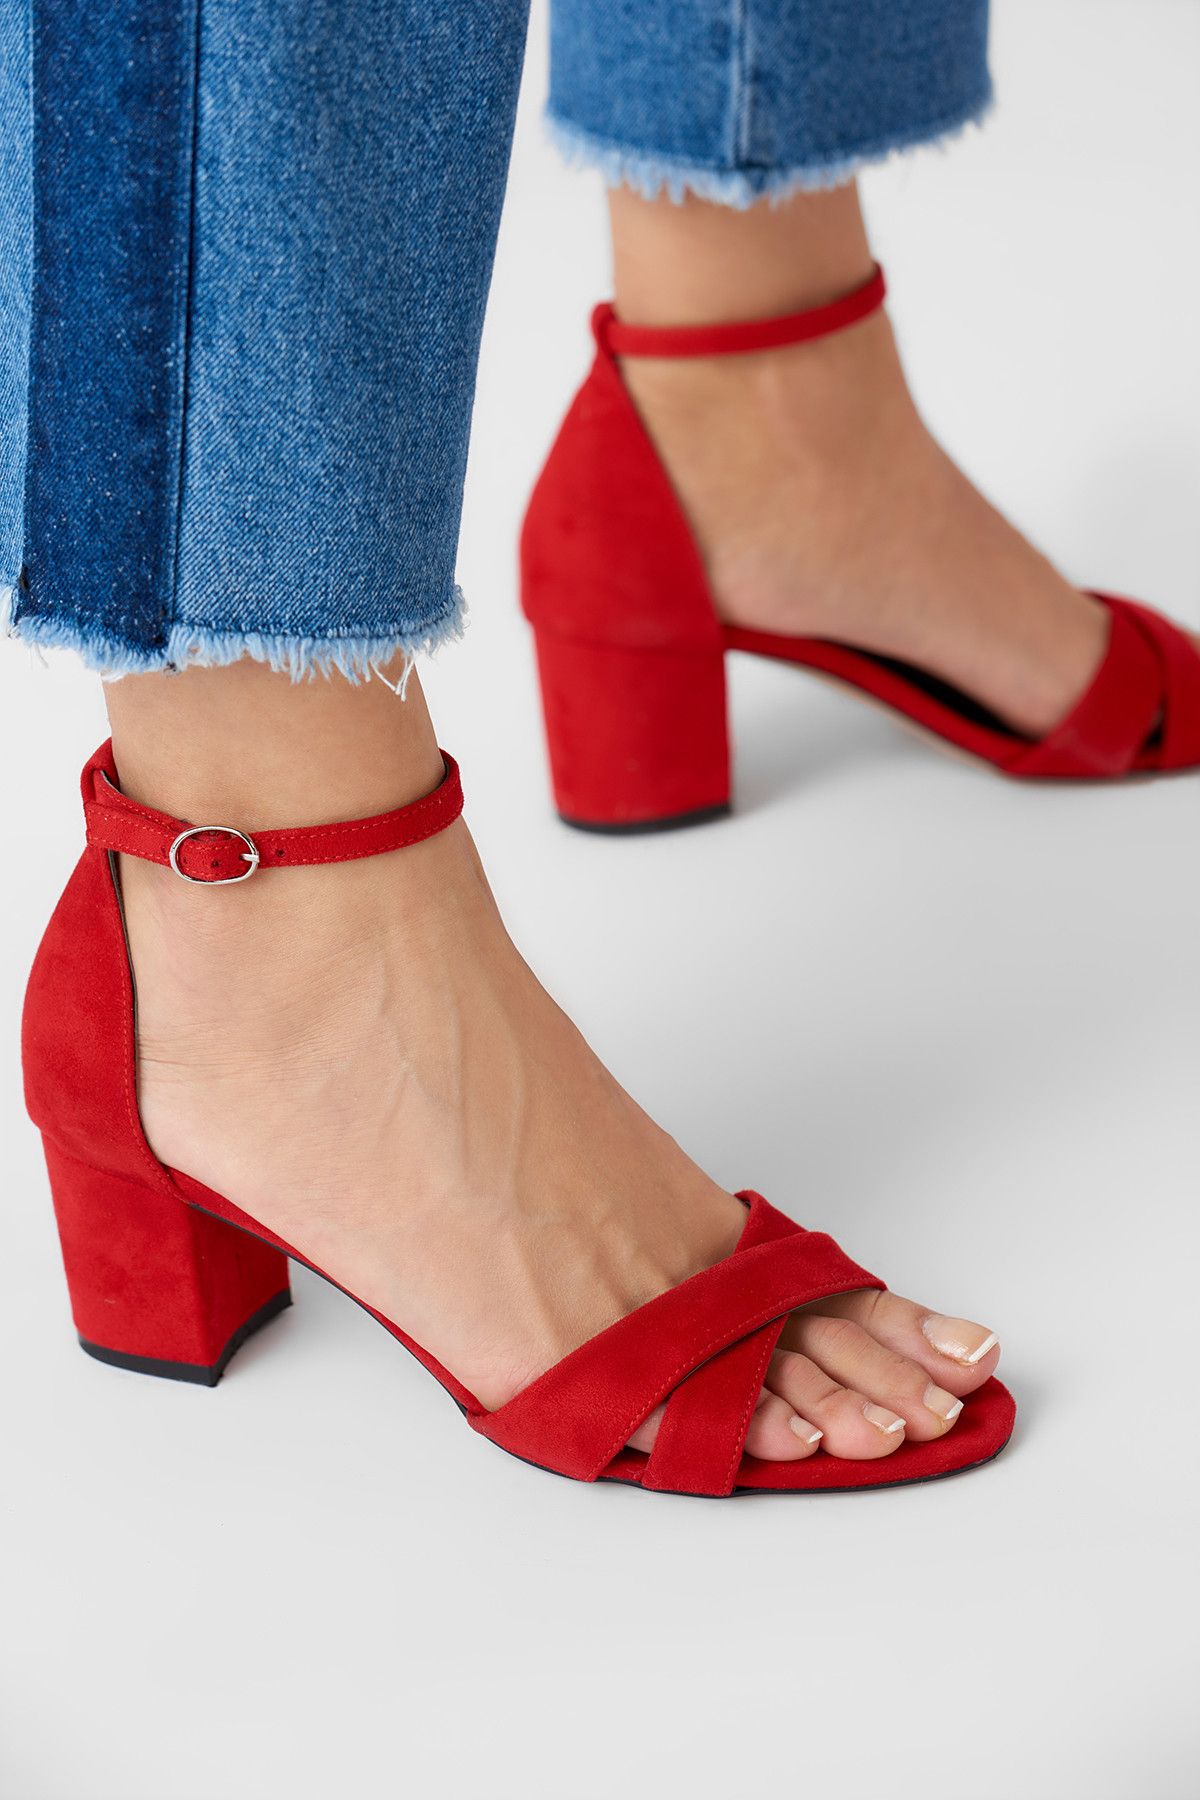 TRENDYOLMİLLA Kırmızı Süet Kadın Topuklu Ayakkabı 8203